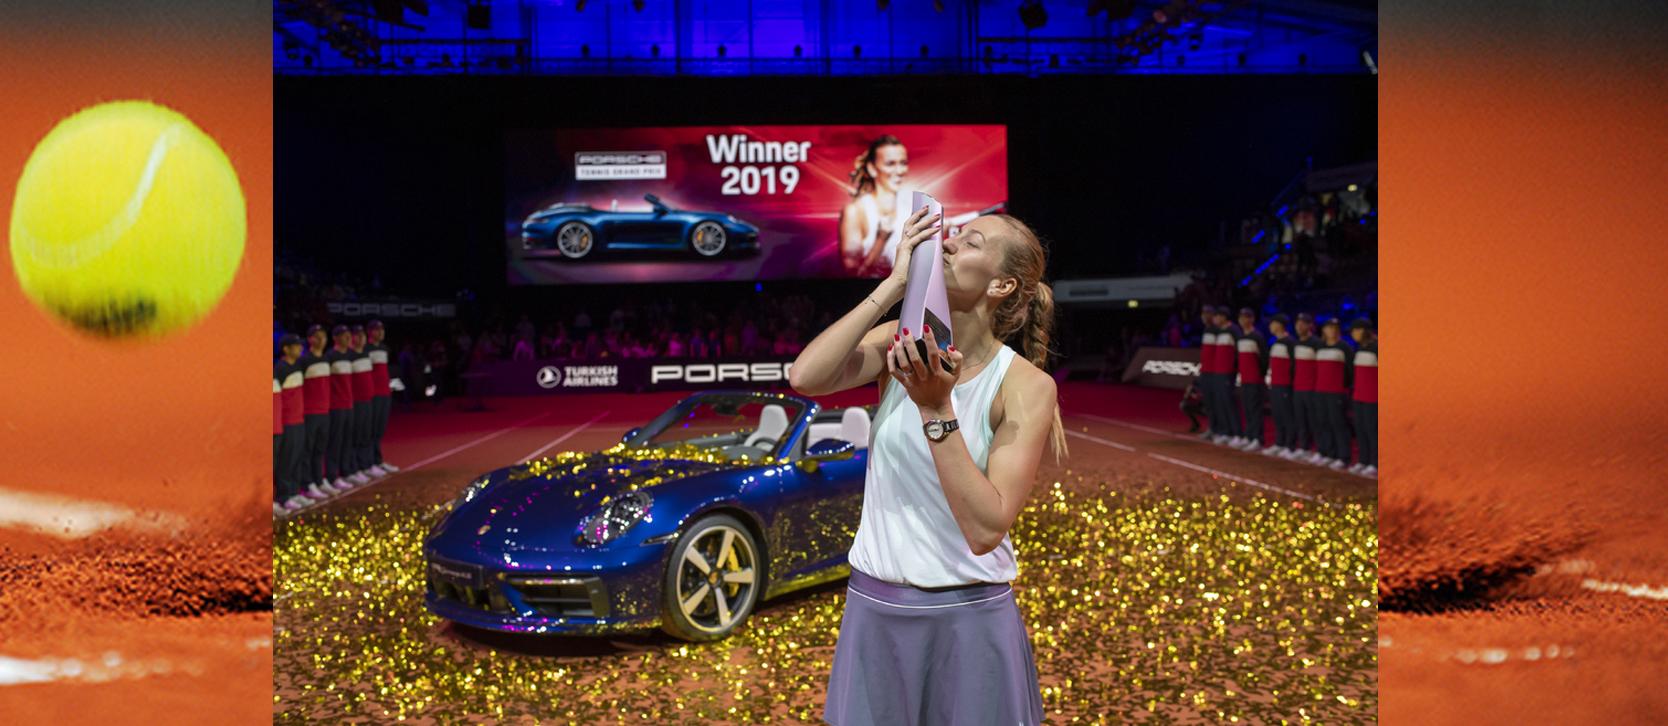 V roce 2019 se při své sedmé účasti na turnaji Porsche Tennis Grand Prix z vítězství radovala Petra Kvitová